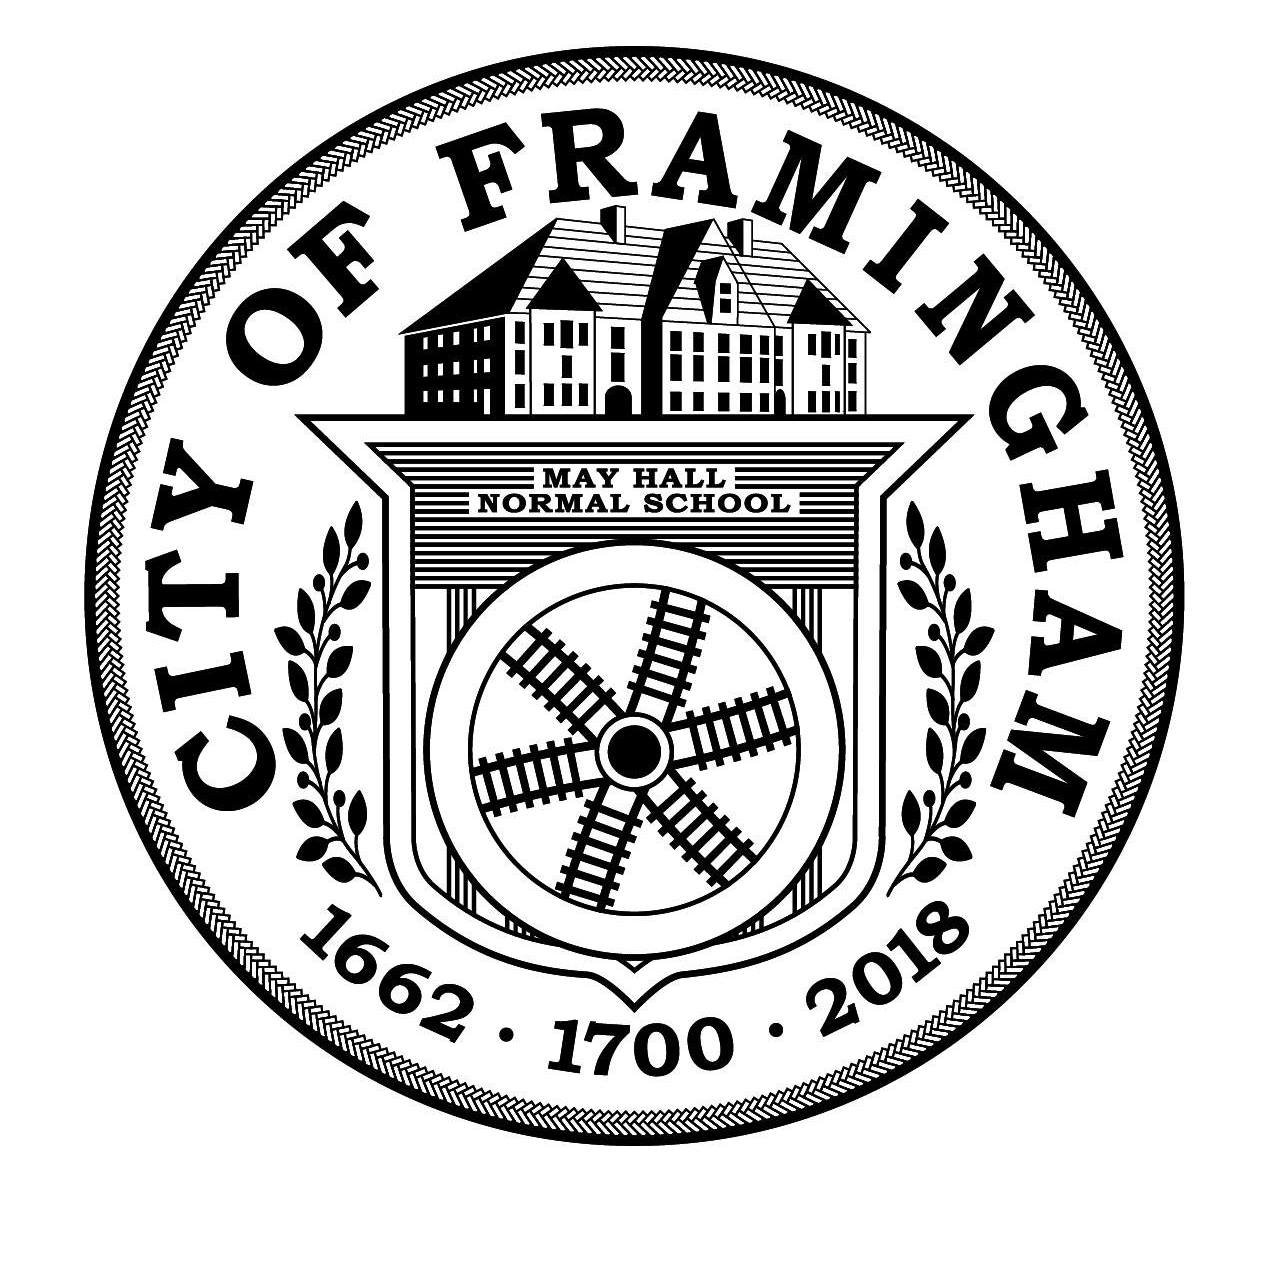 City of Framingham